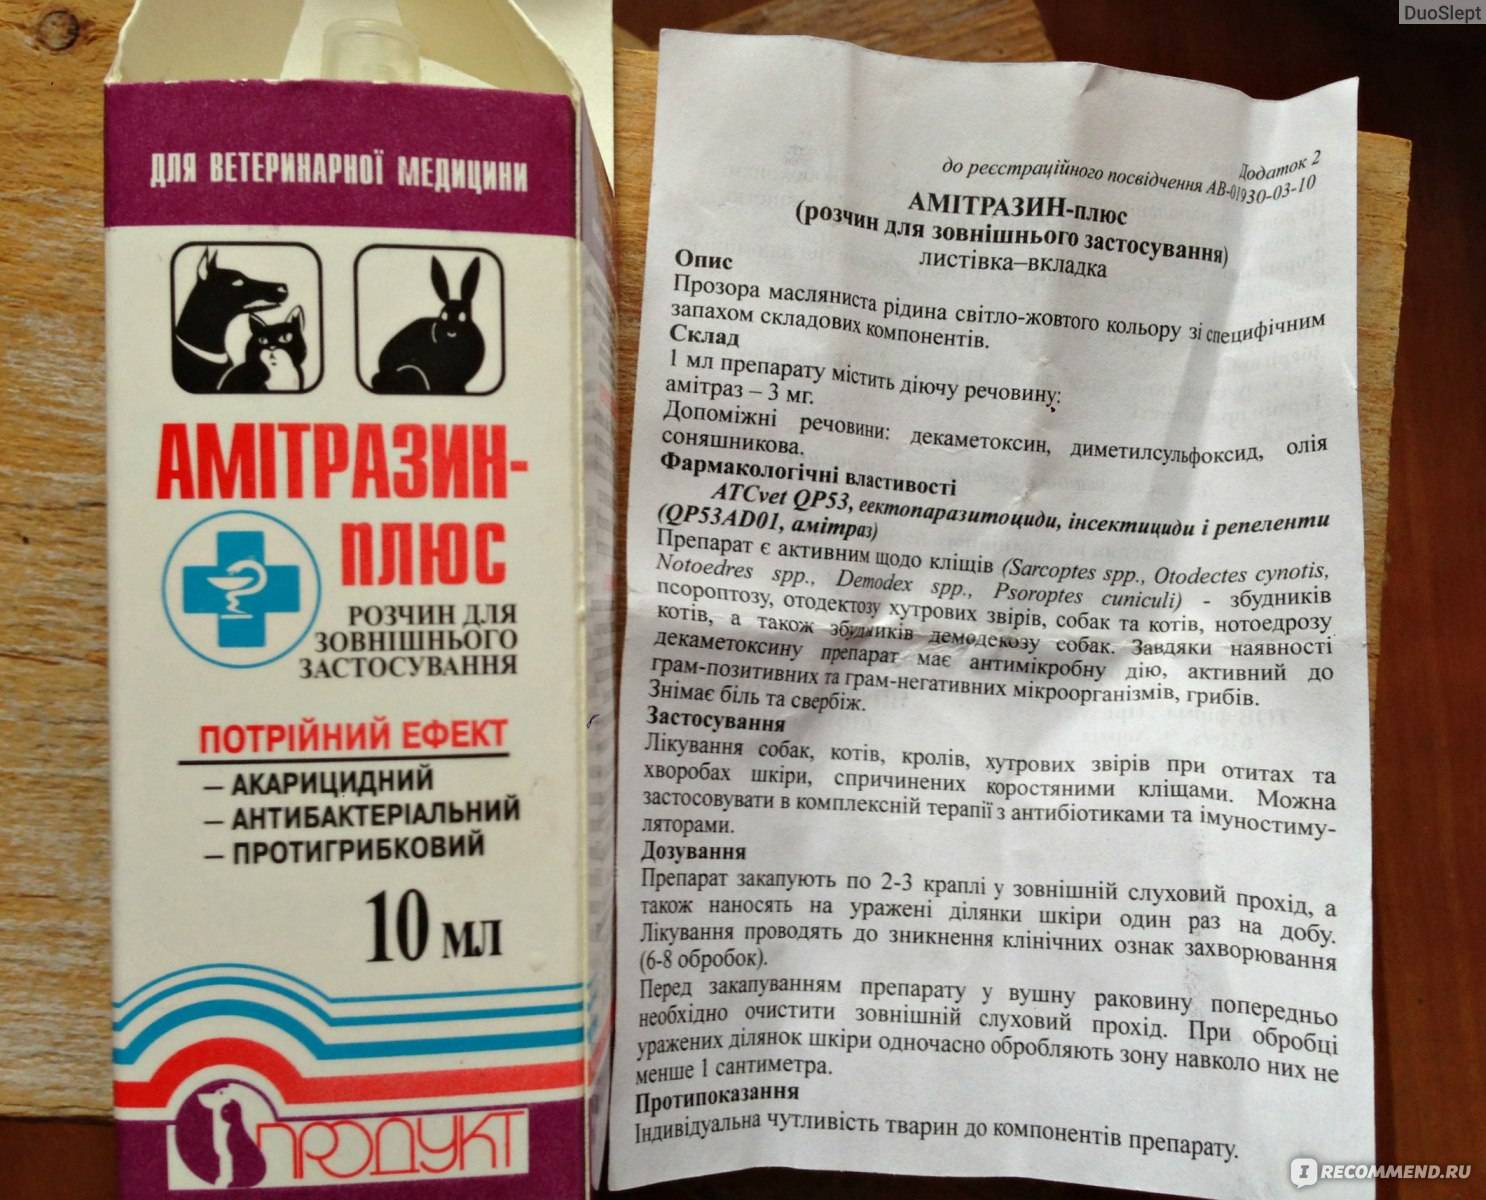 Амитразин (раствор) для кошек и собак | отзывы о применении препаратов для животных от ветеринаров и заводчиков